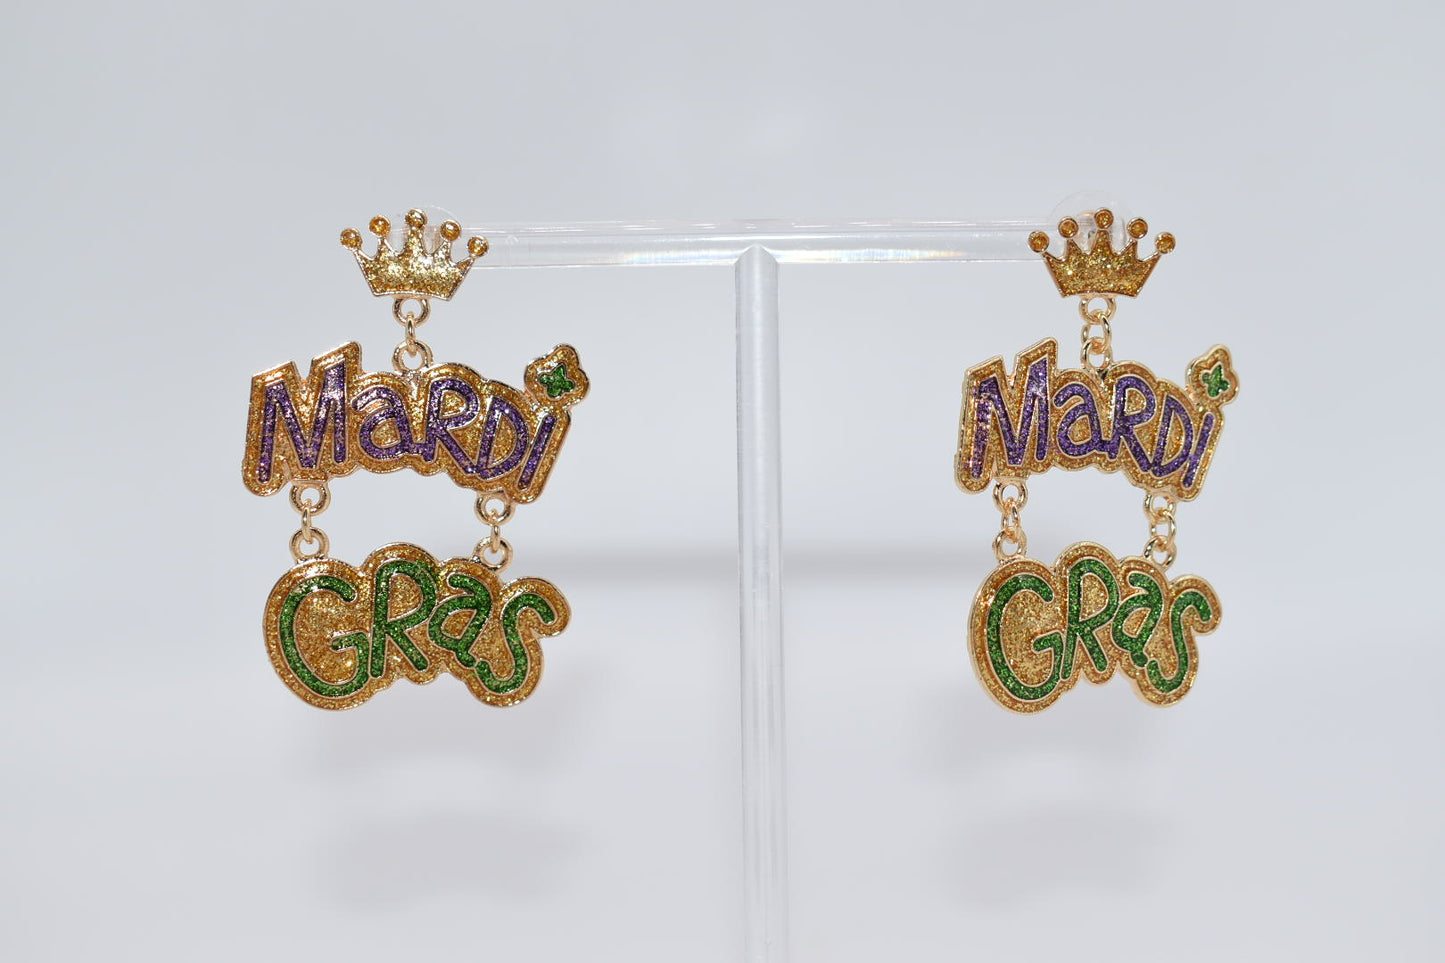 Statement Earrings: "Miss Mardi Gras" Drop Earrings